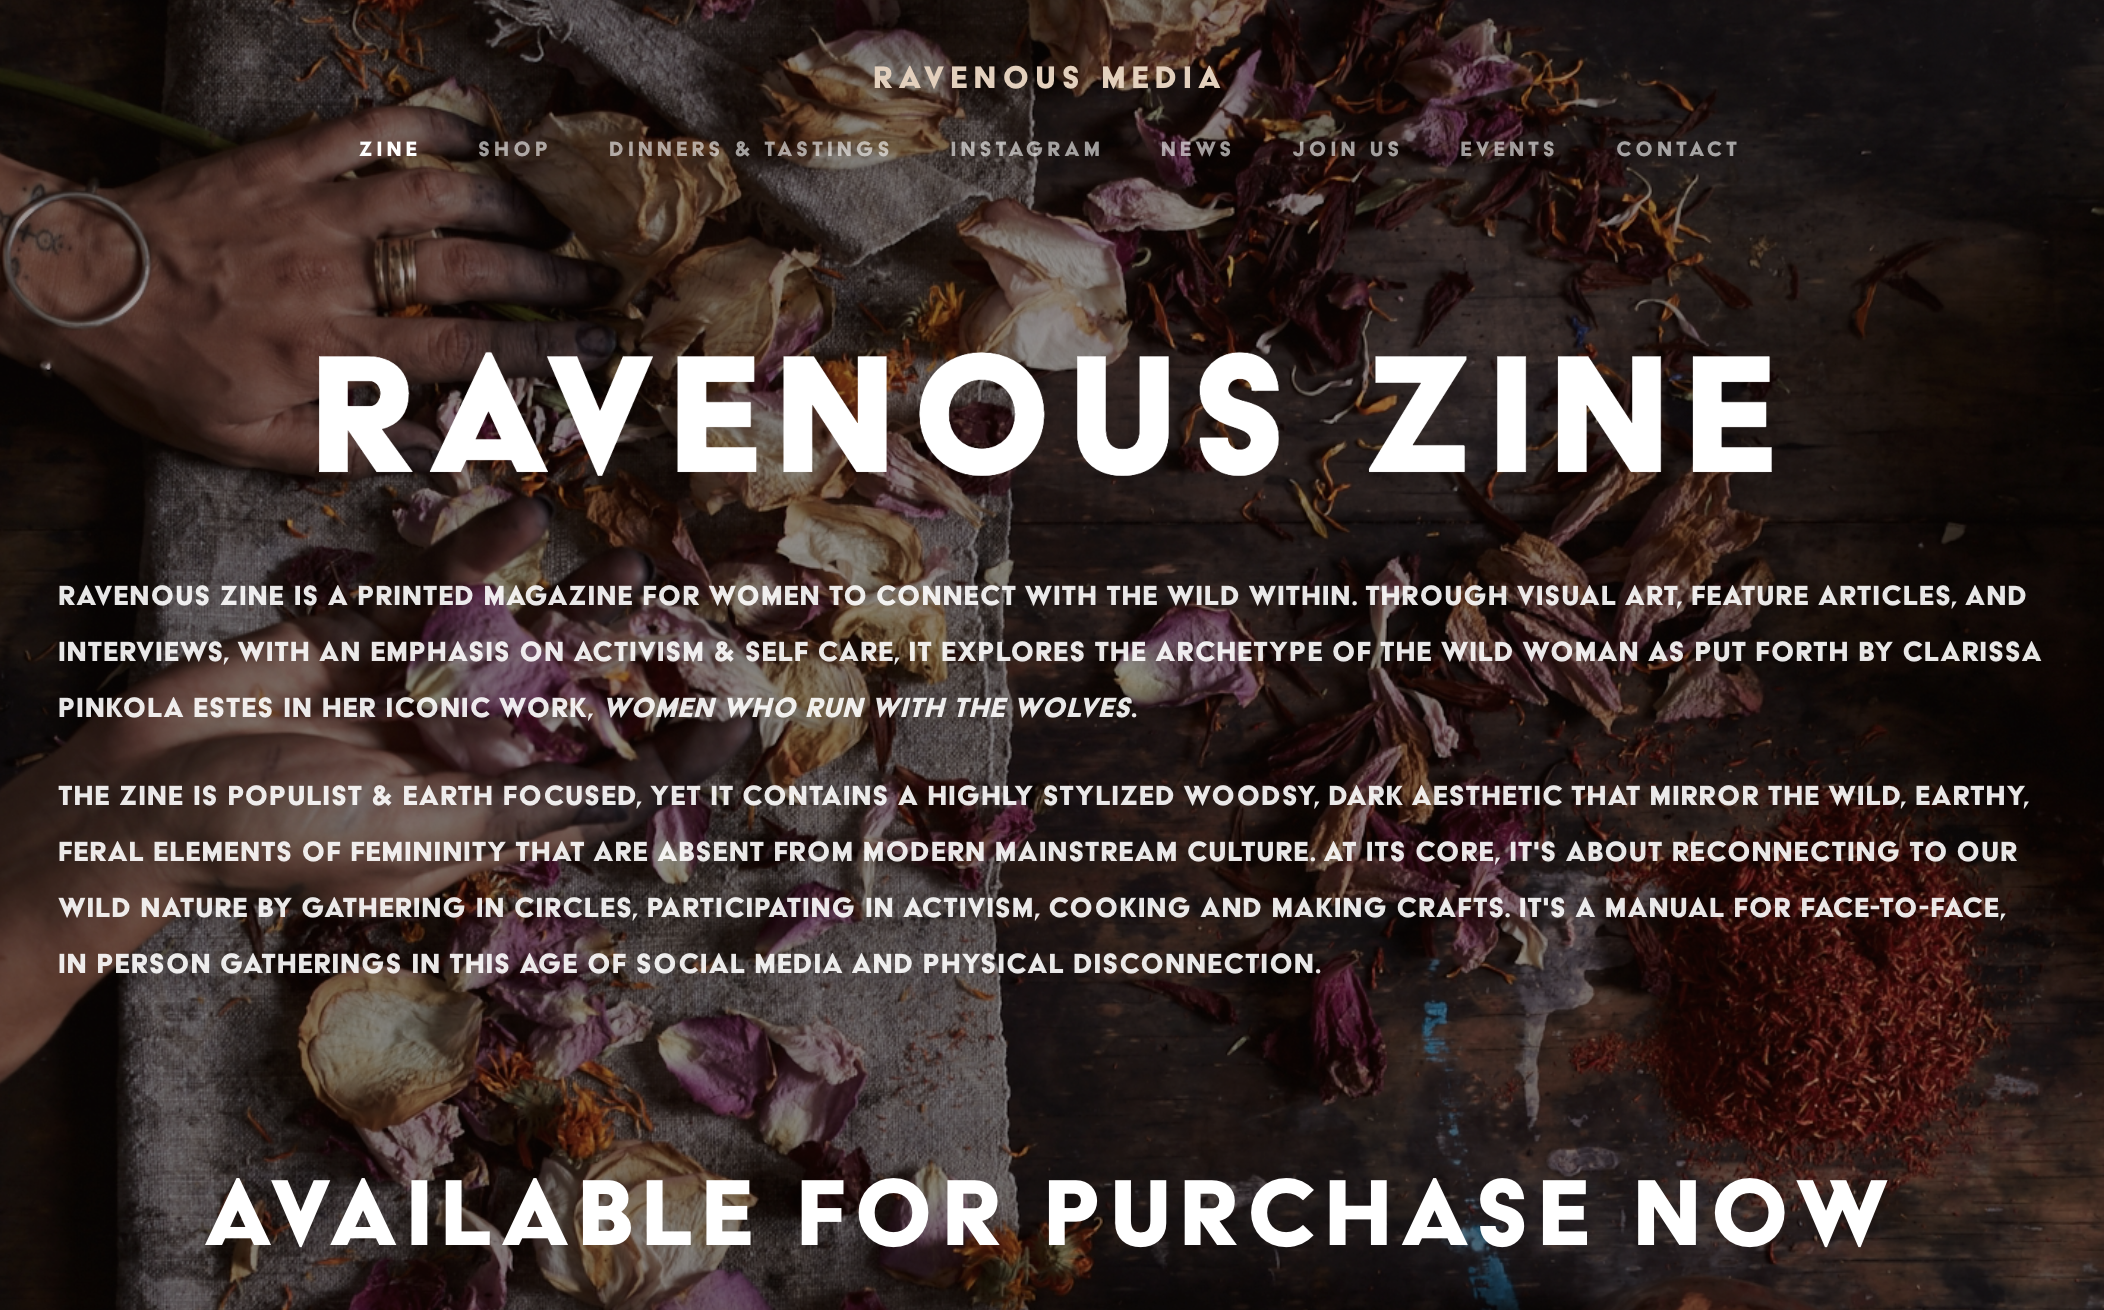 Website Design for Ravenous Media